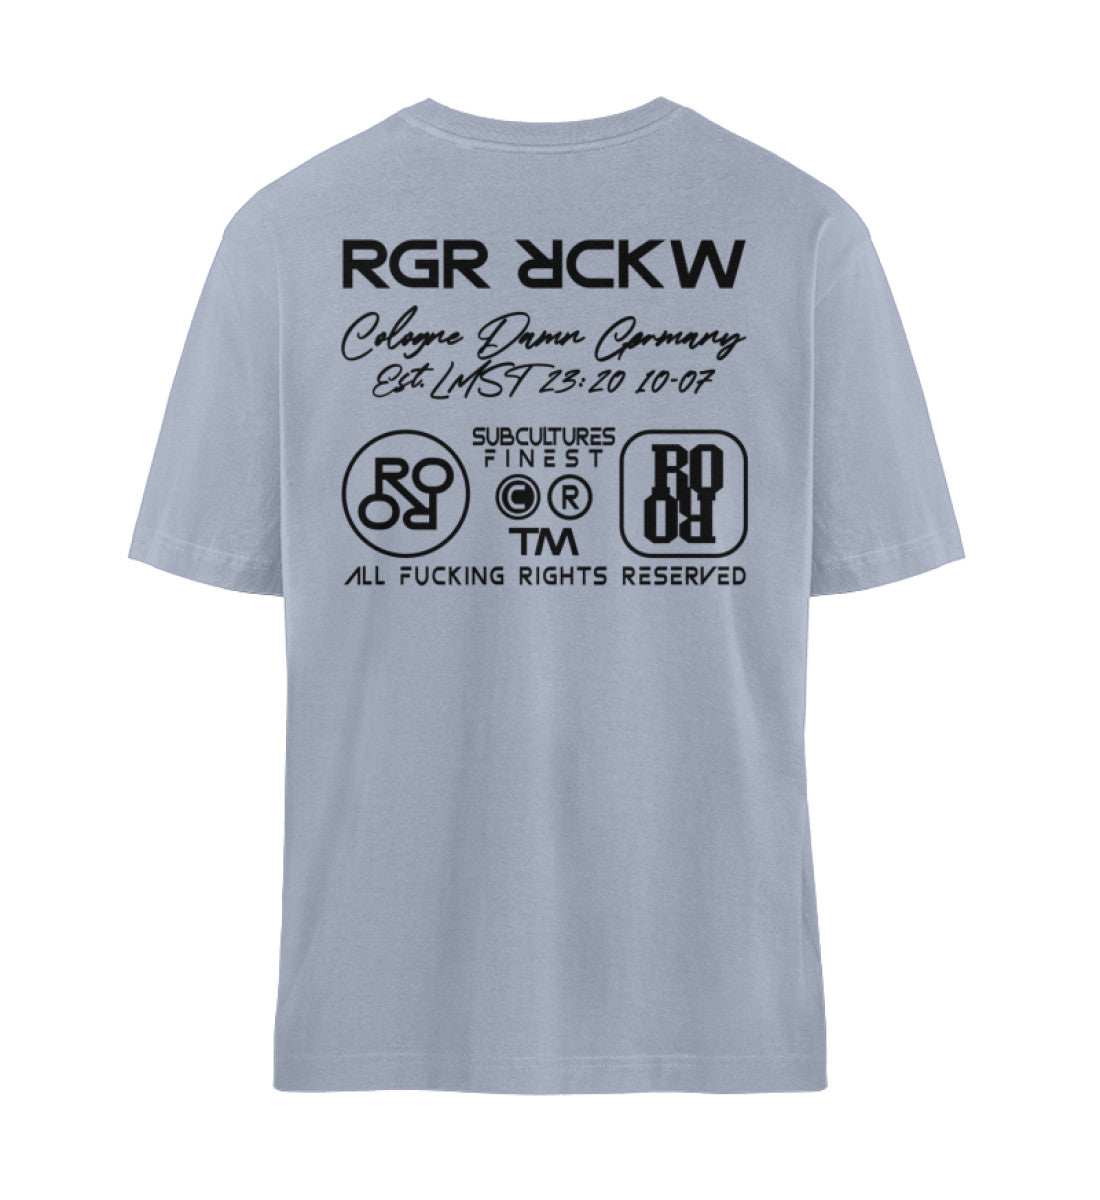 Serene Blue farbiges T-Shirt Unisex Relaxed Fit für Frauen und Männer bedruckt mit dem Design der Roger Rockawoo Kollektion BMX Bunny Hop frohe Ostern